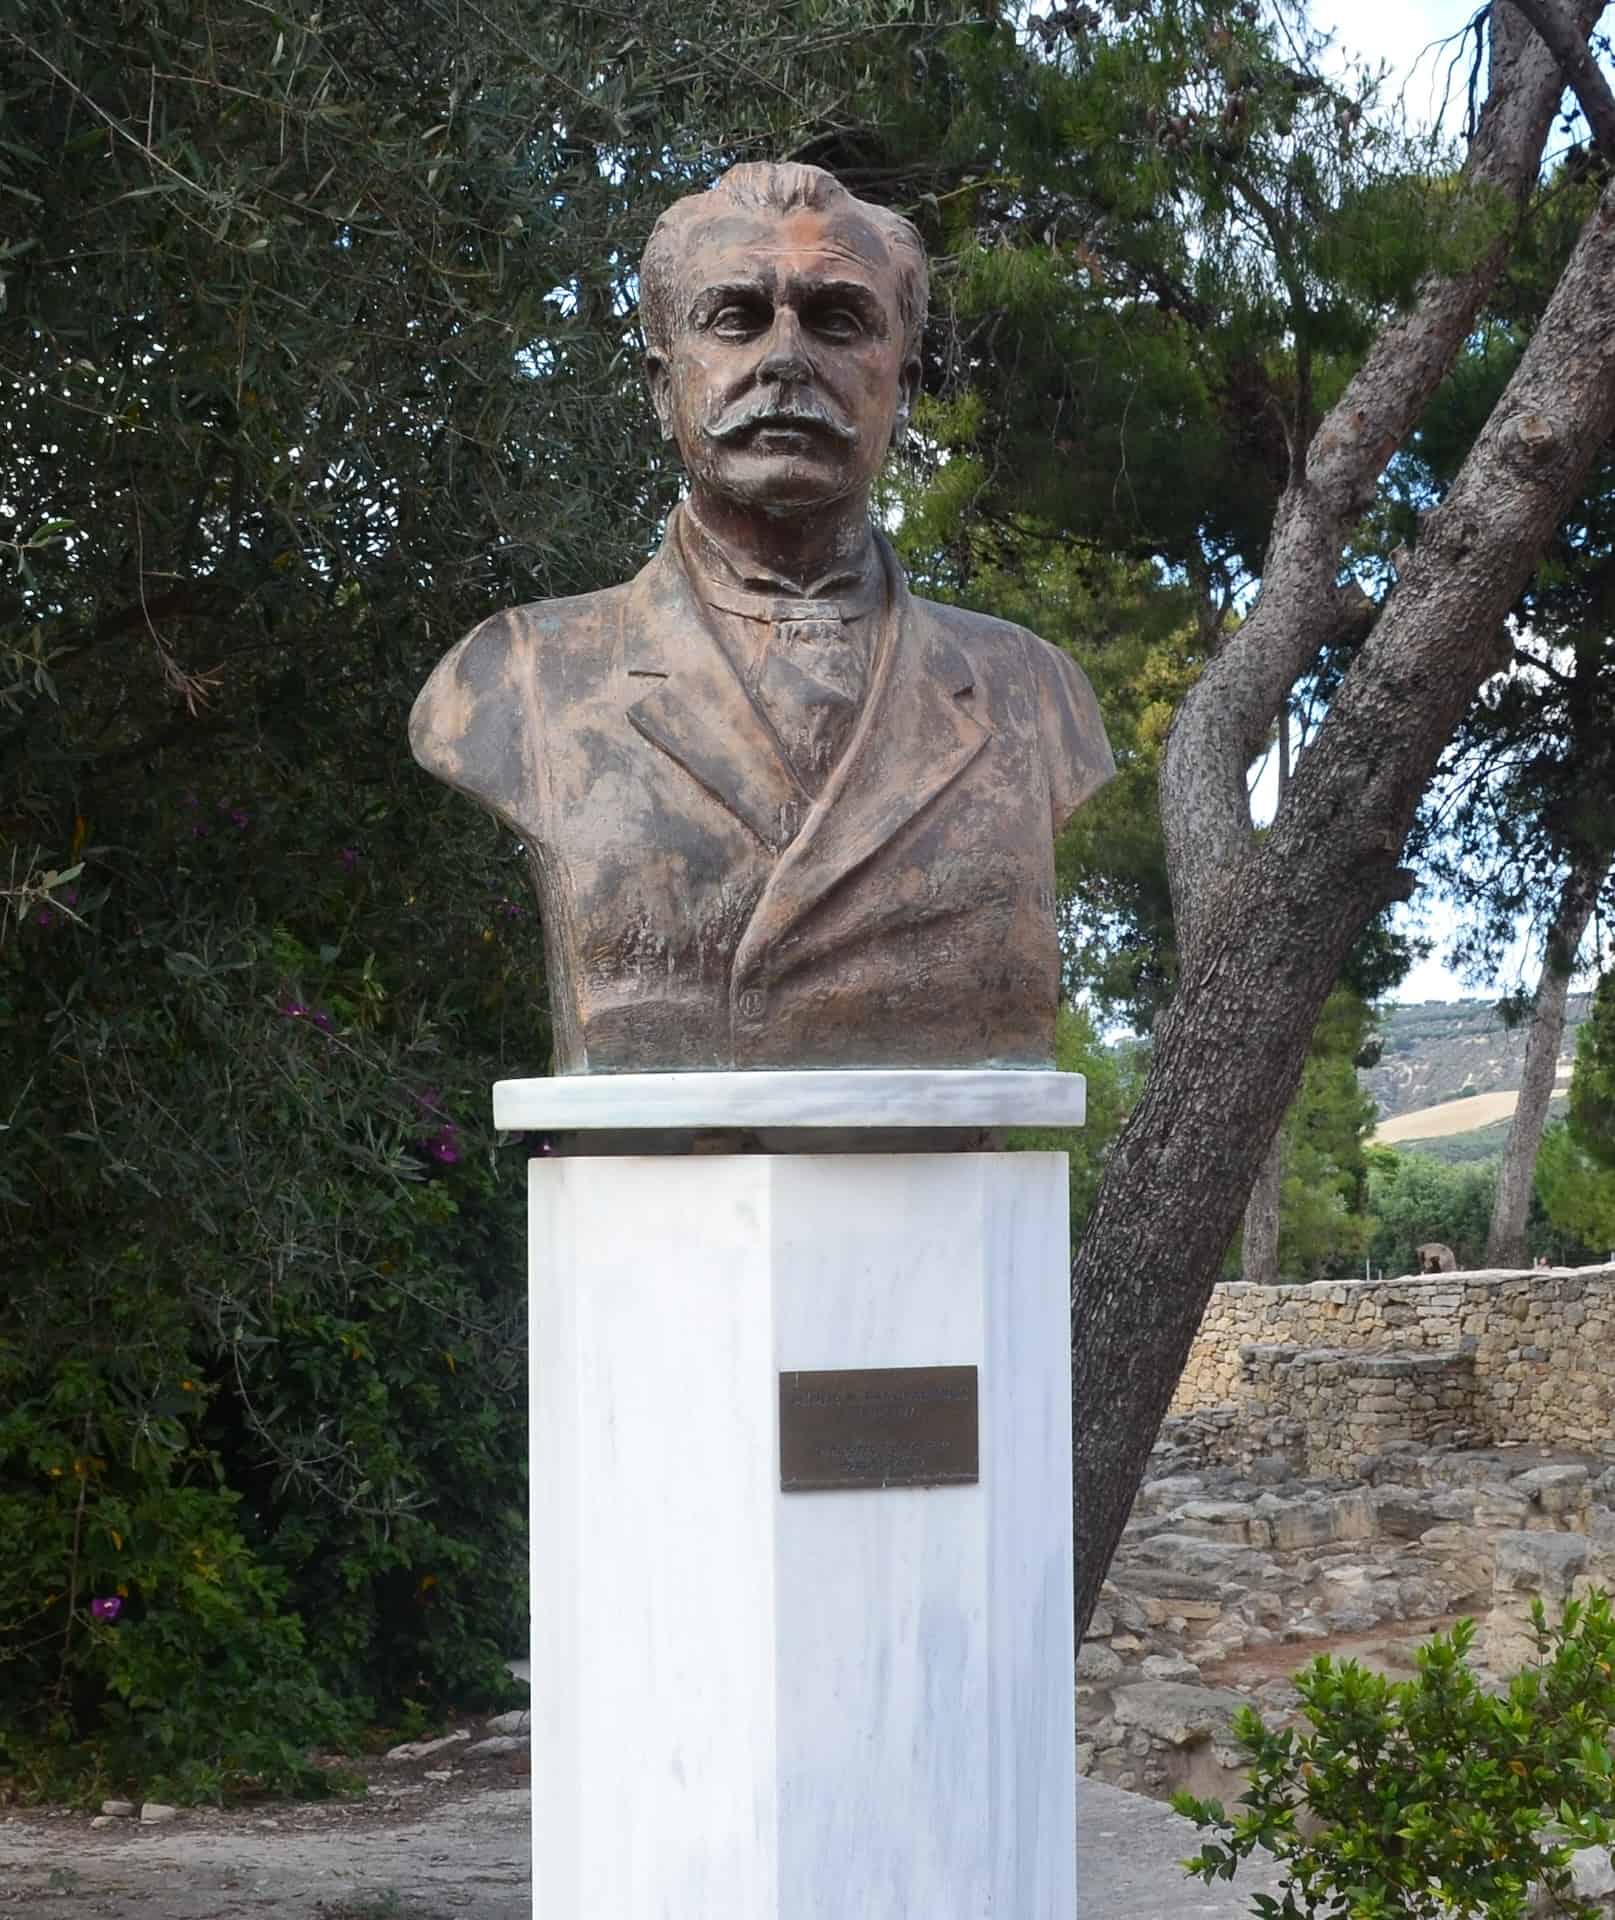 Bust of Minos Kalokairinos at Knossos, Crete, Greece